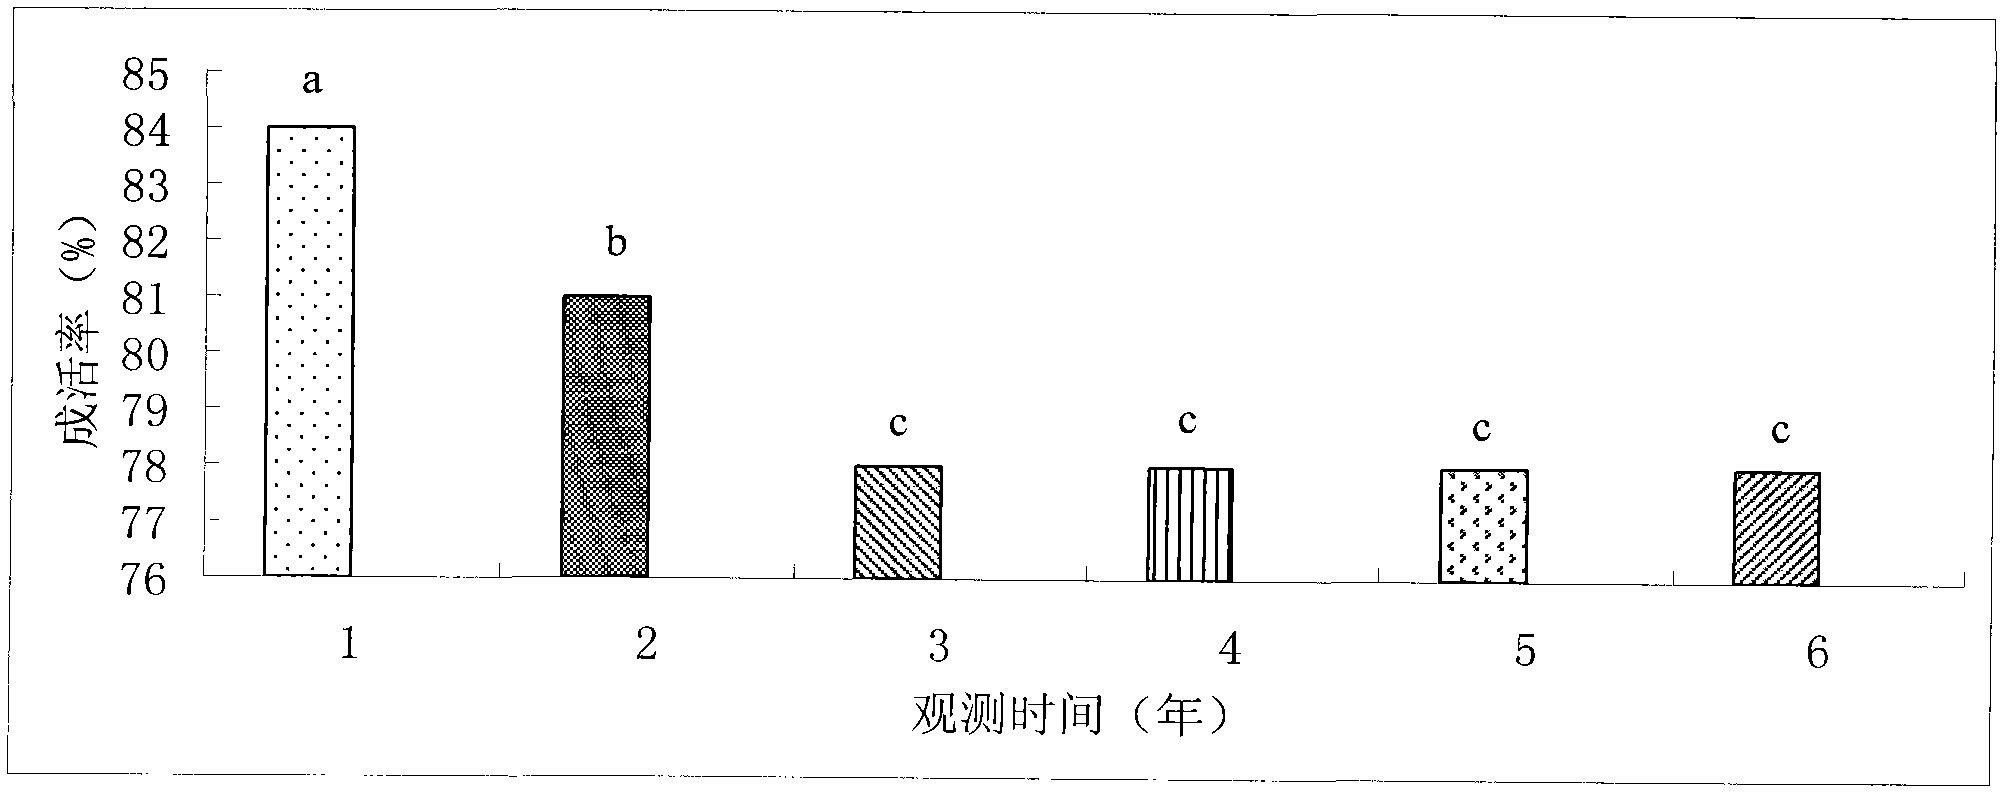 Method for planting Populus euphratica in heavy saline-alkaline land of Gobi desert